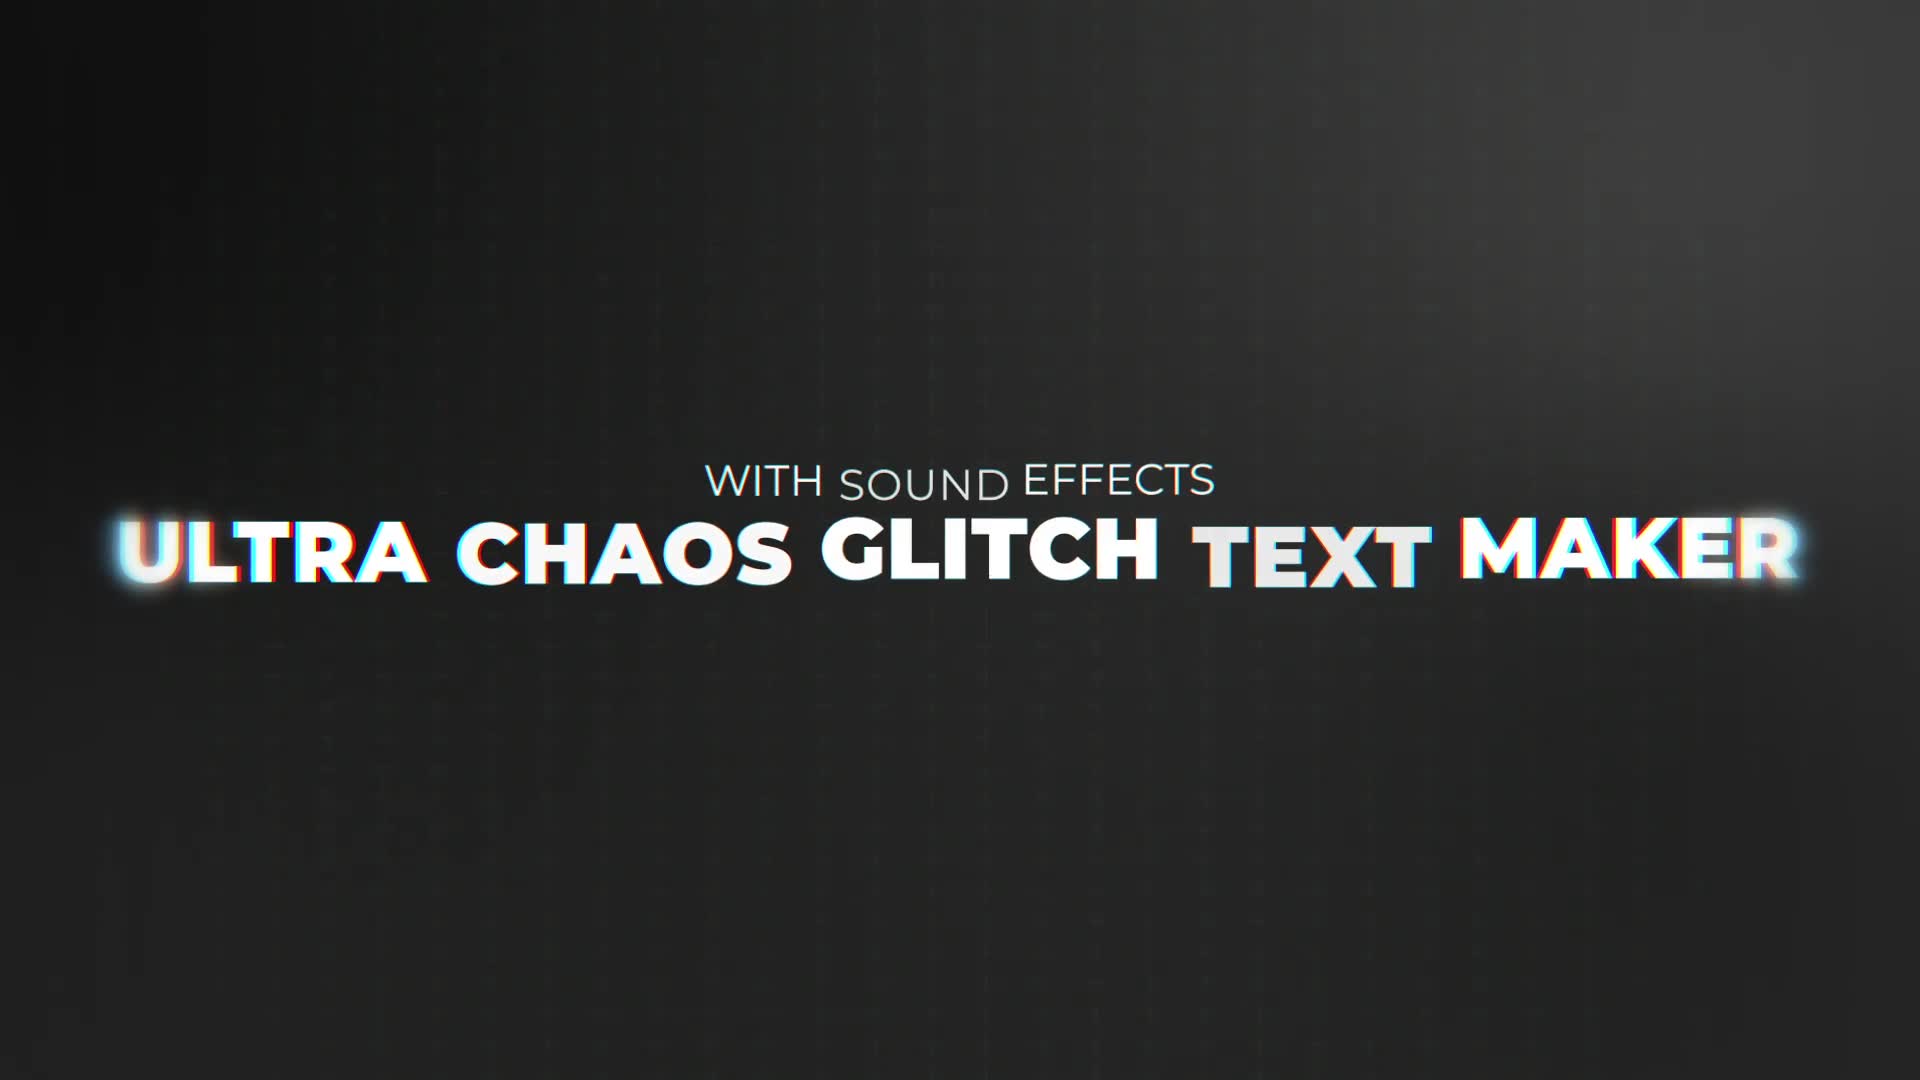 Ultra Chaos Glitch Text Maker | Premiere Pro Videohive 31773882 Premiere Pro Image 2